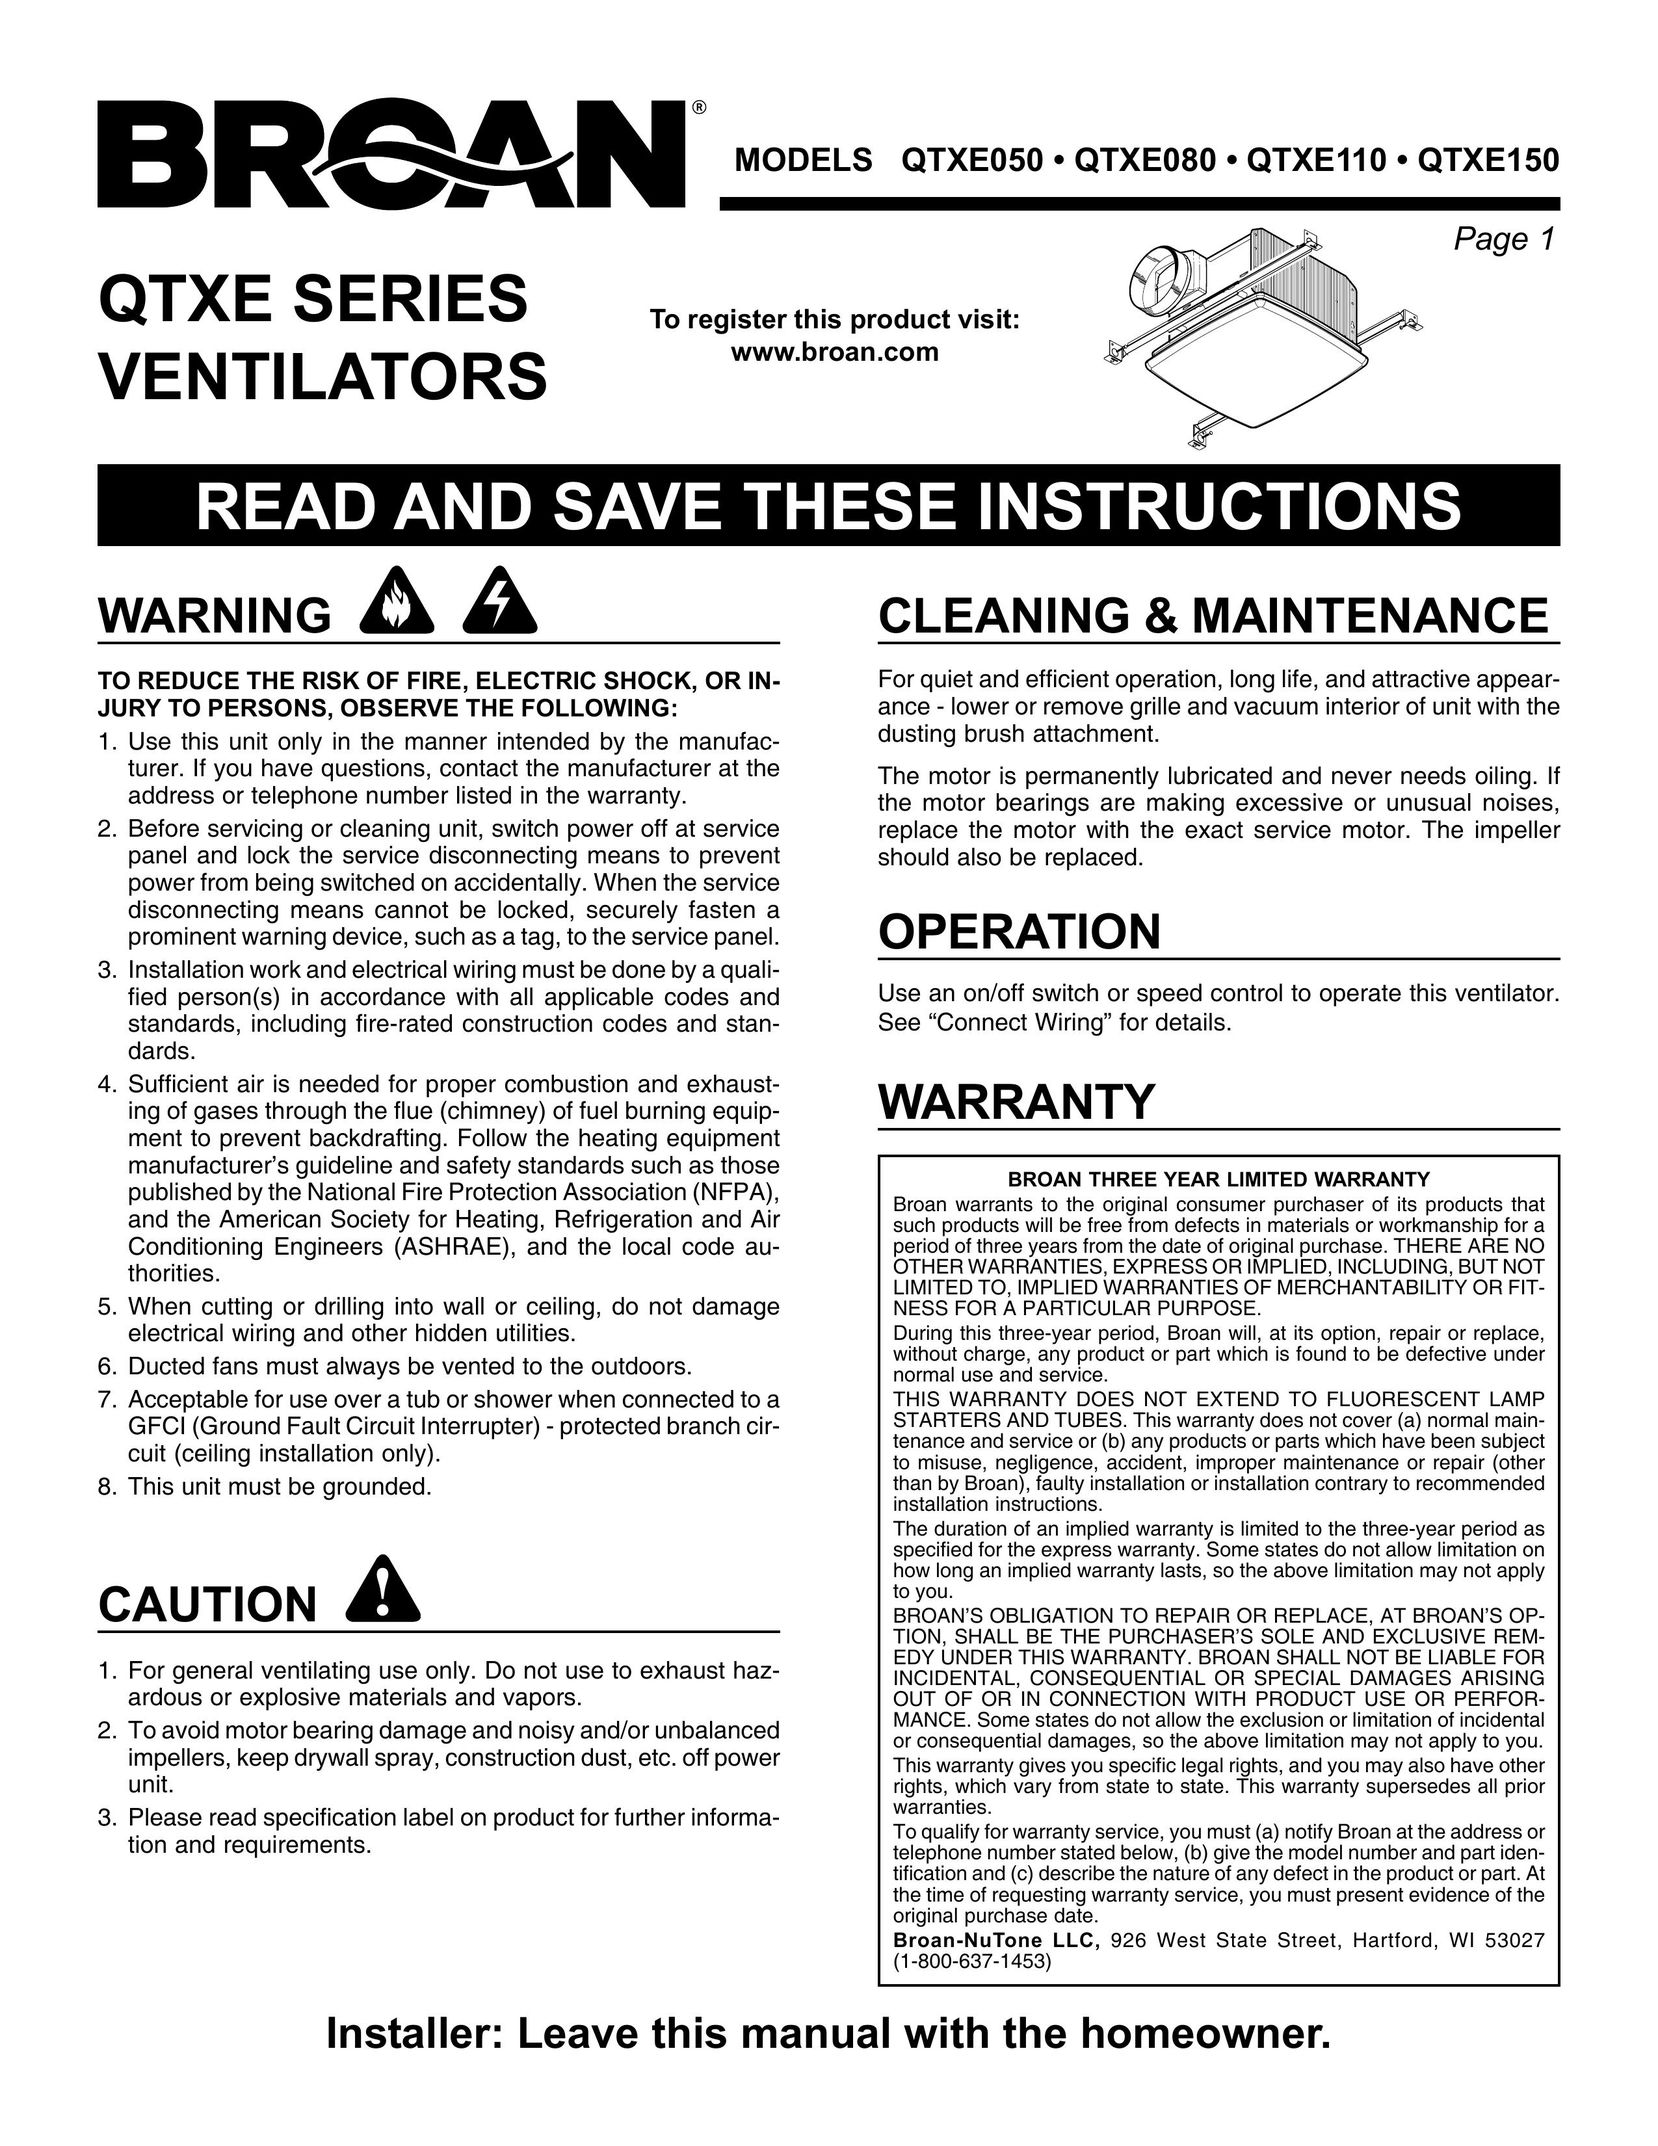 Broan QTXE110 Fan User Manual